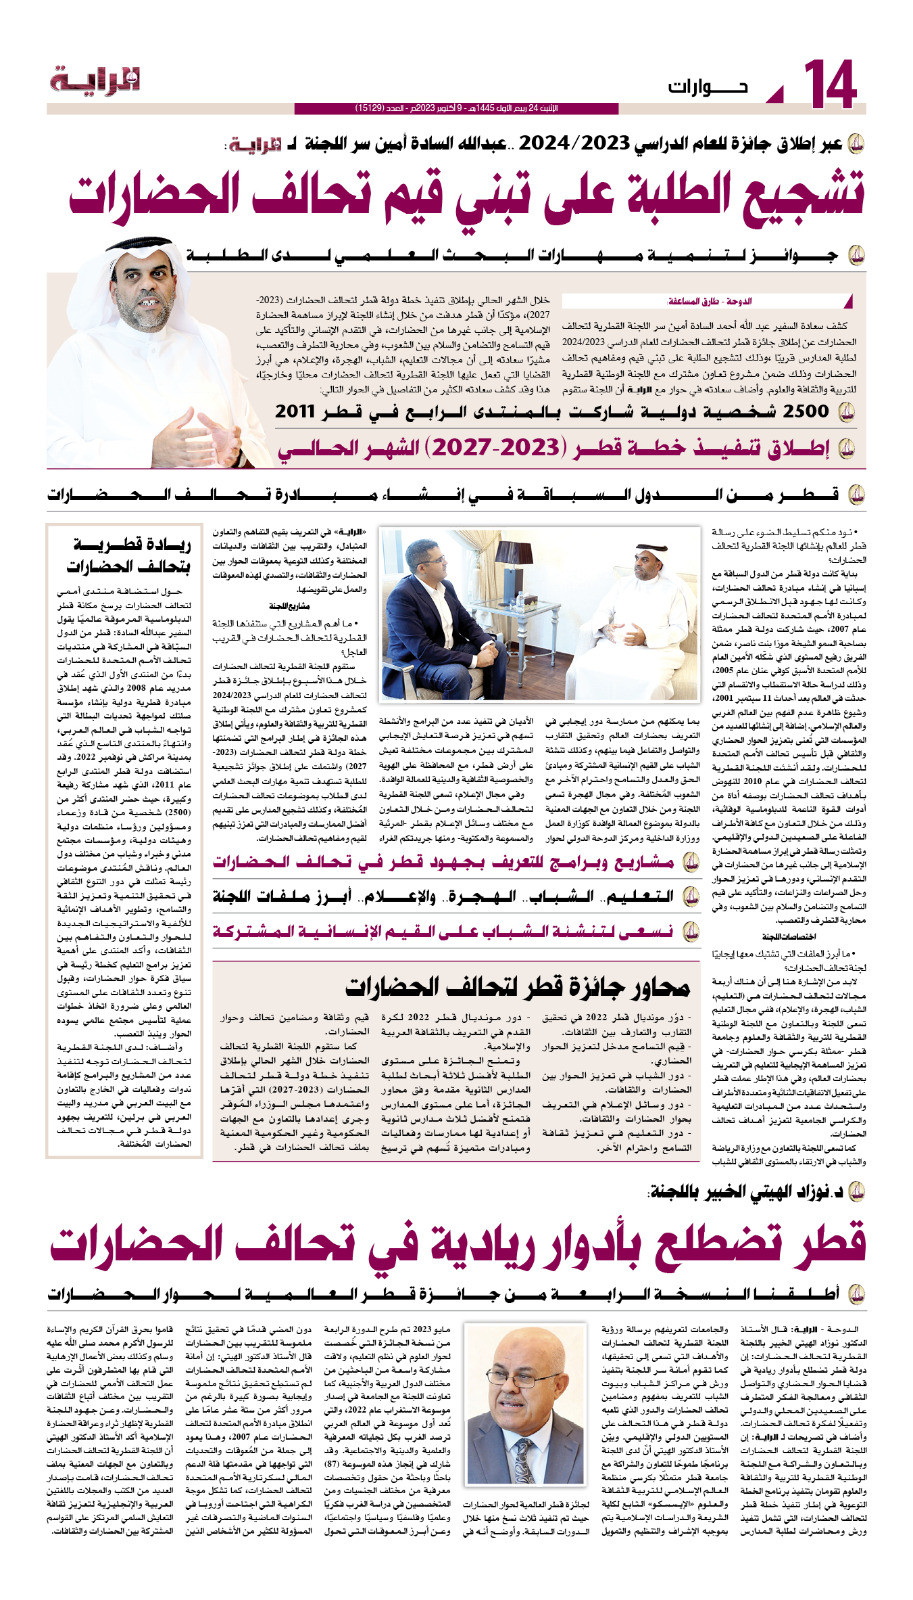 لقاء صحفي بجريدة الراية القطرية